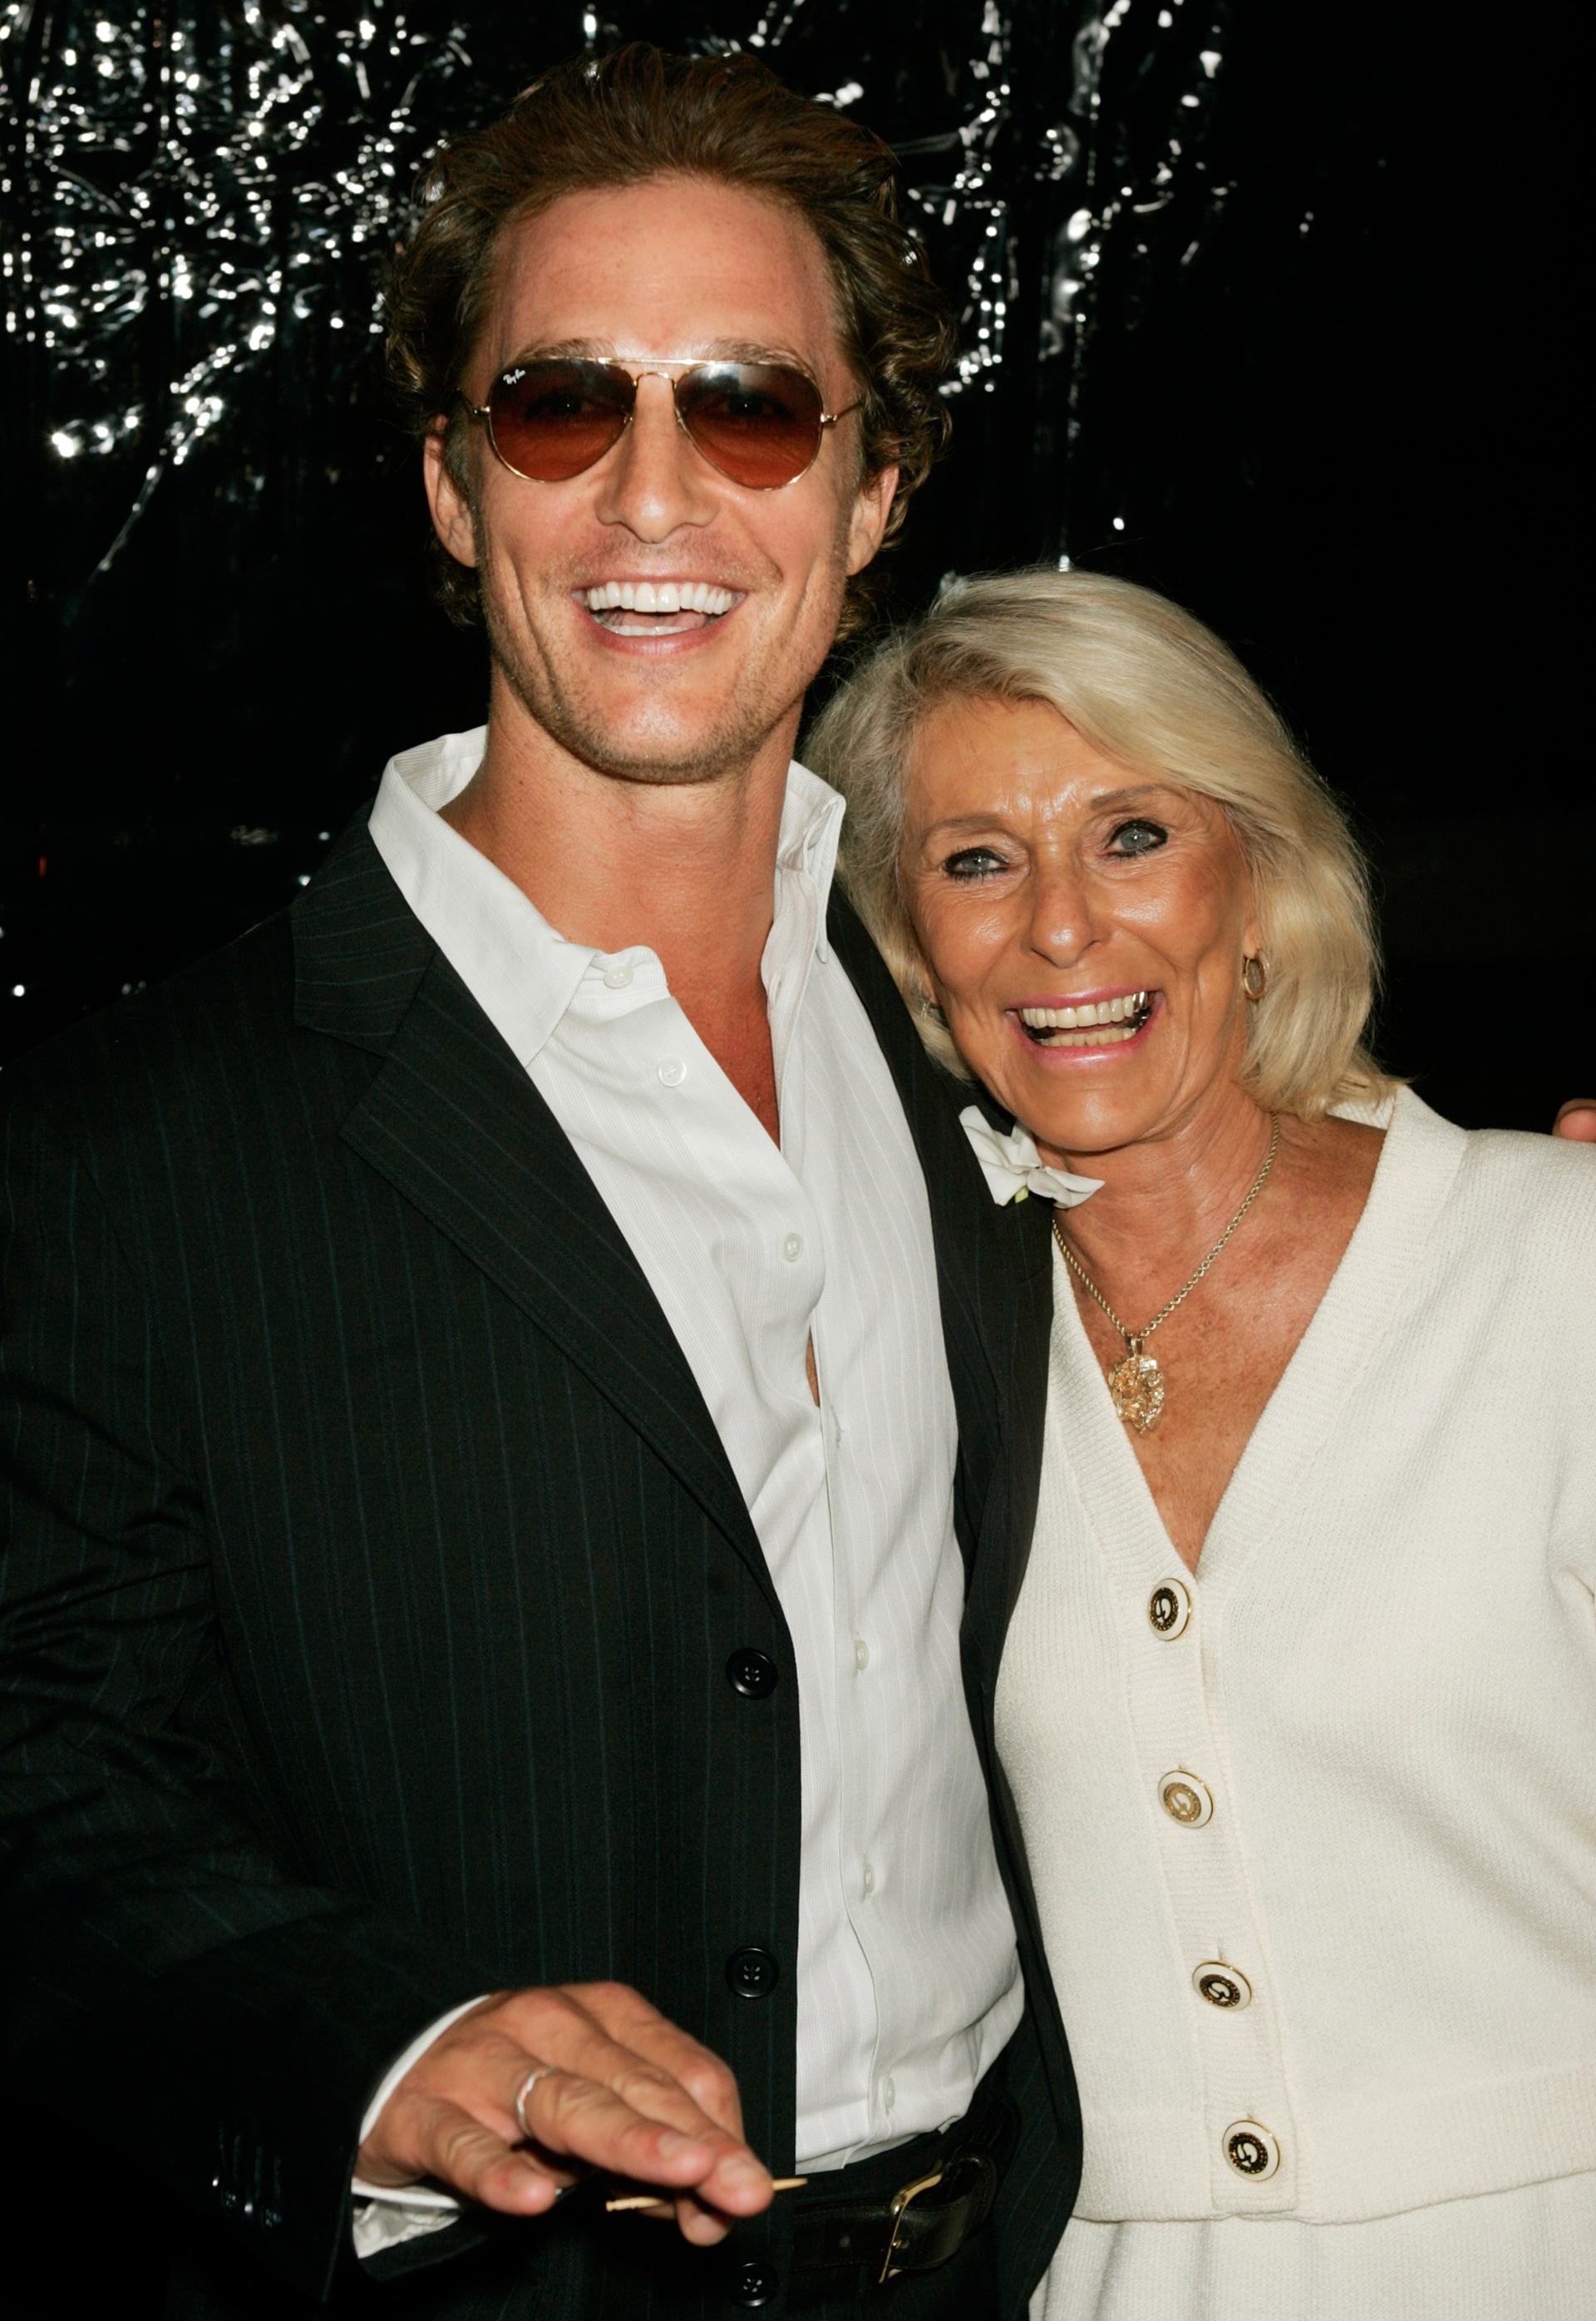 Foto de archivo: El actor Matthew McConaughey posa con su madre Kay en el estreno de la película "Two for the Money" en Beverly Hills el 26 de septiembre de 2005 (REUTERS/Fred Prouser)